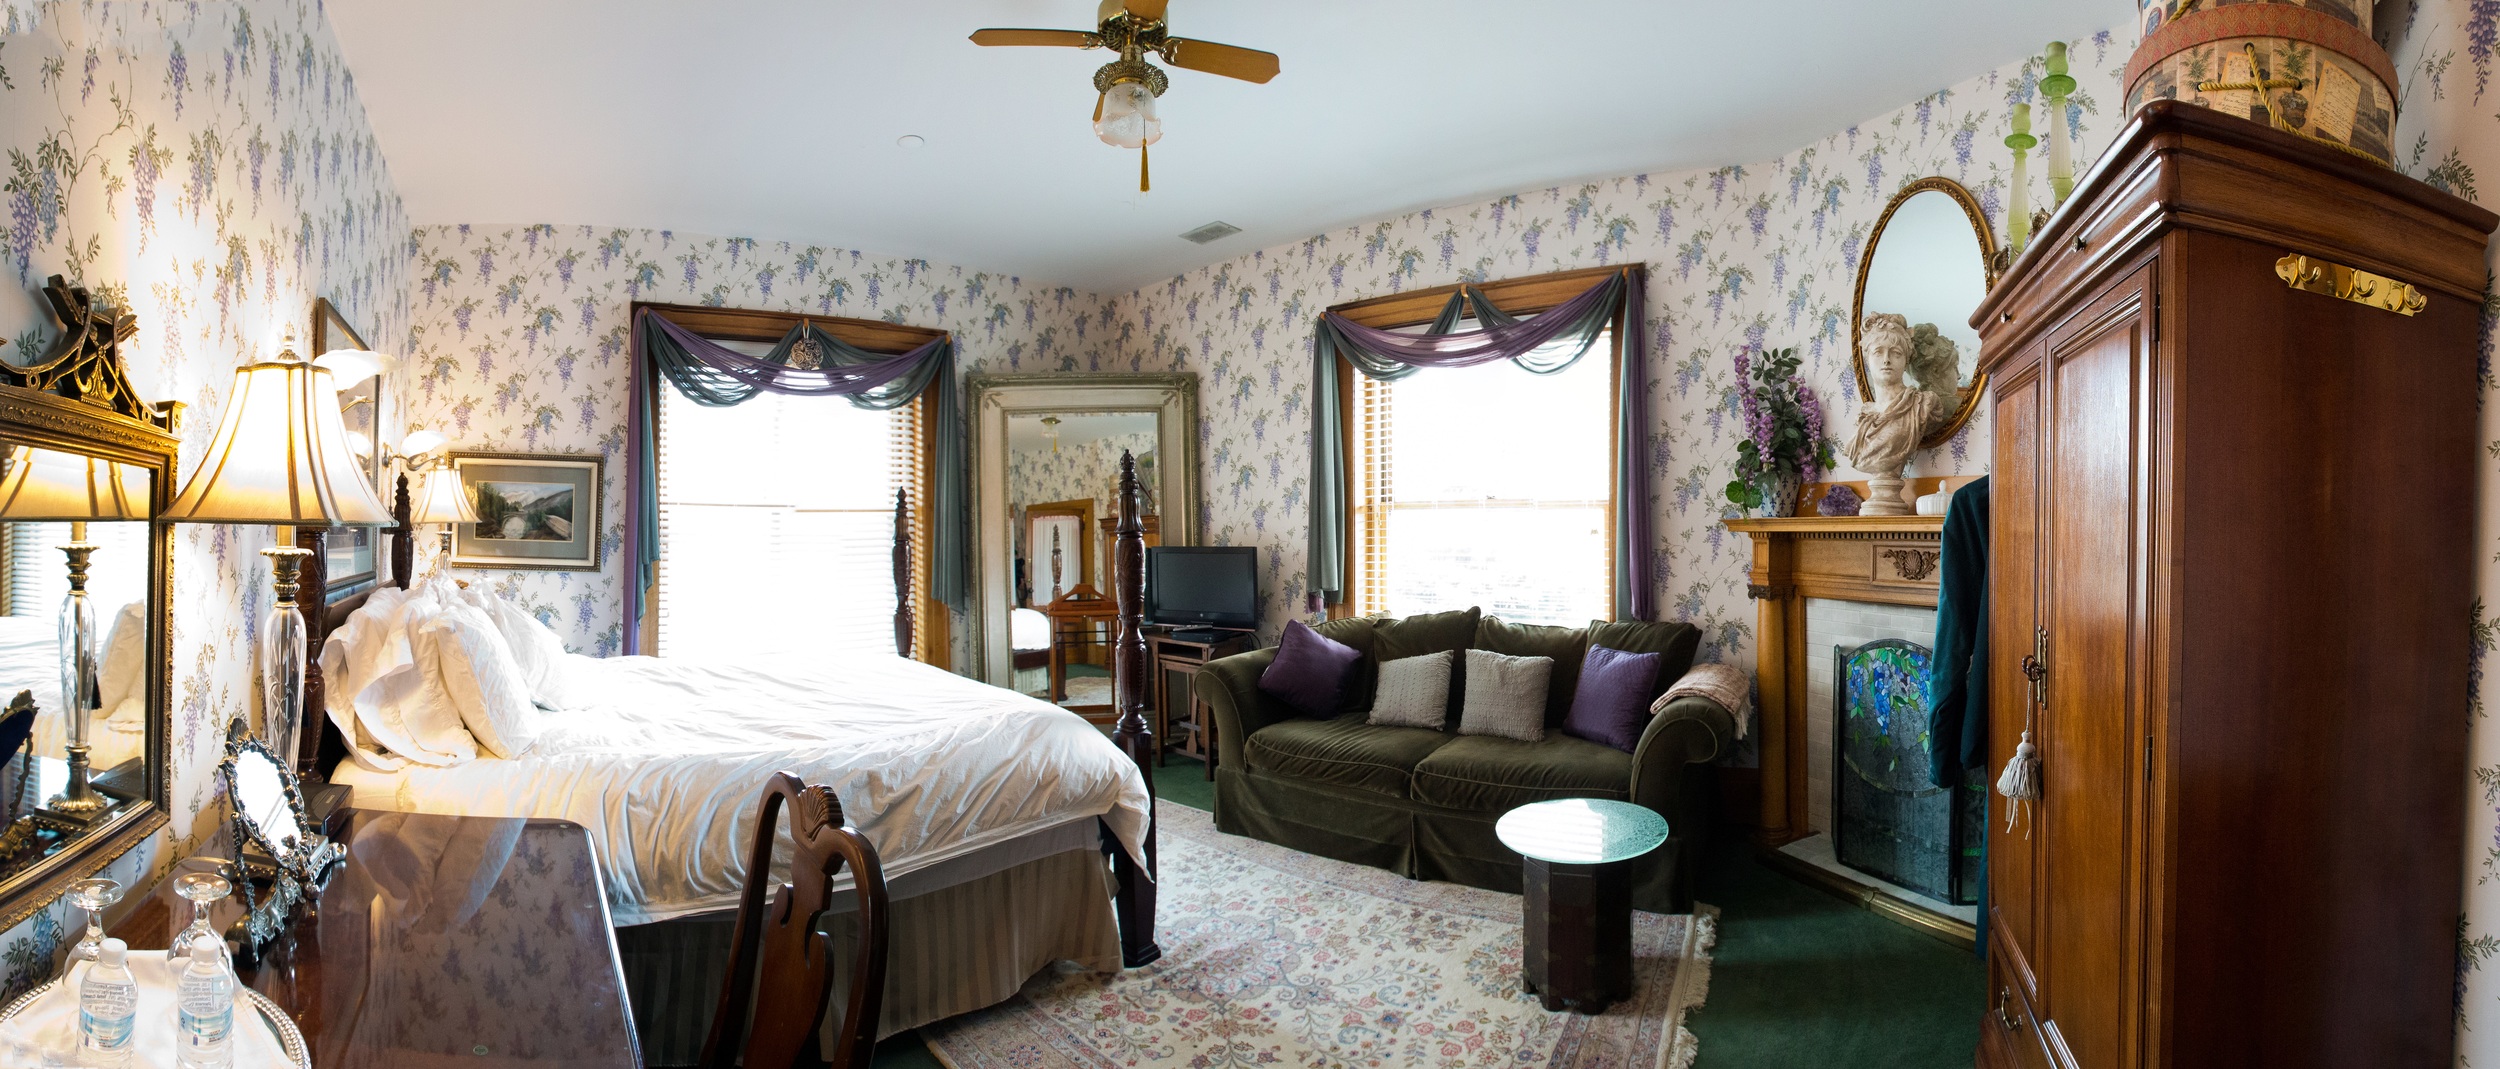  Room 2 - Single Queen Bed - $140 per night 